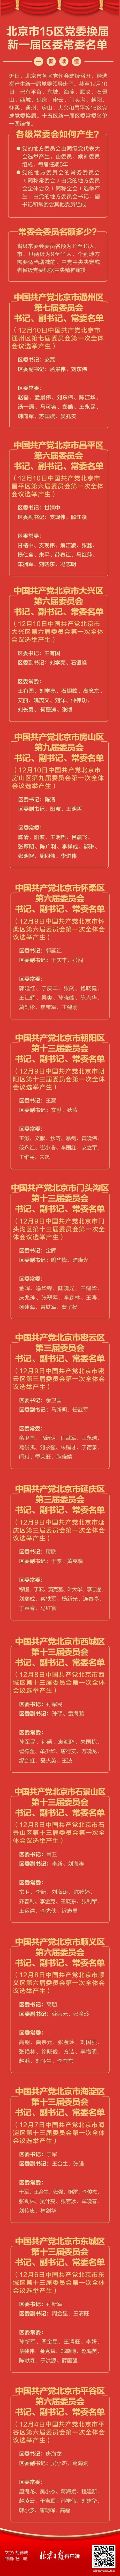 北京15区党委换届 新一届区委常委名单一图读懂